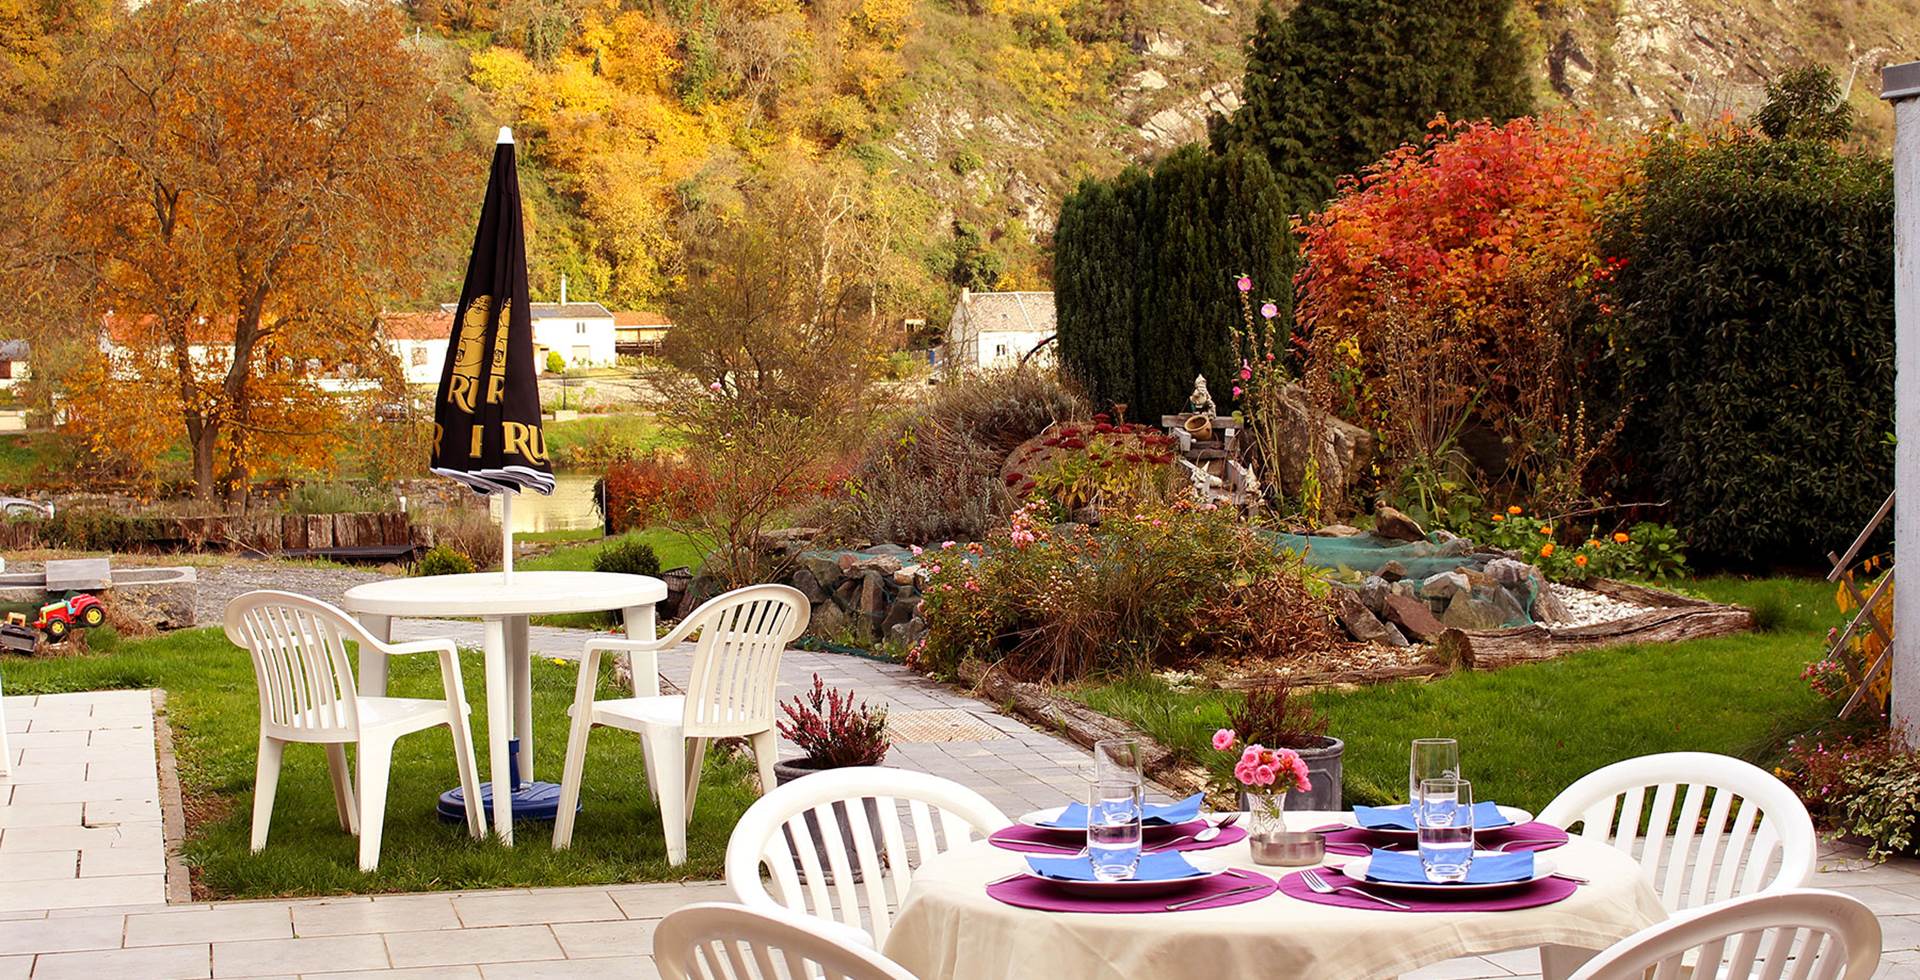 Côté terrasse et jardin, un cadre idéal pour se détendre !